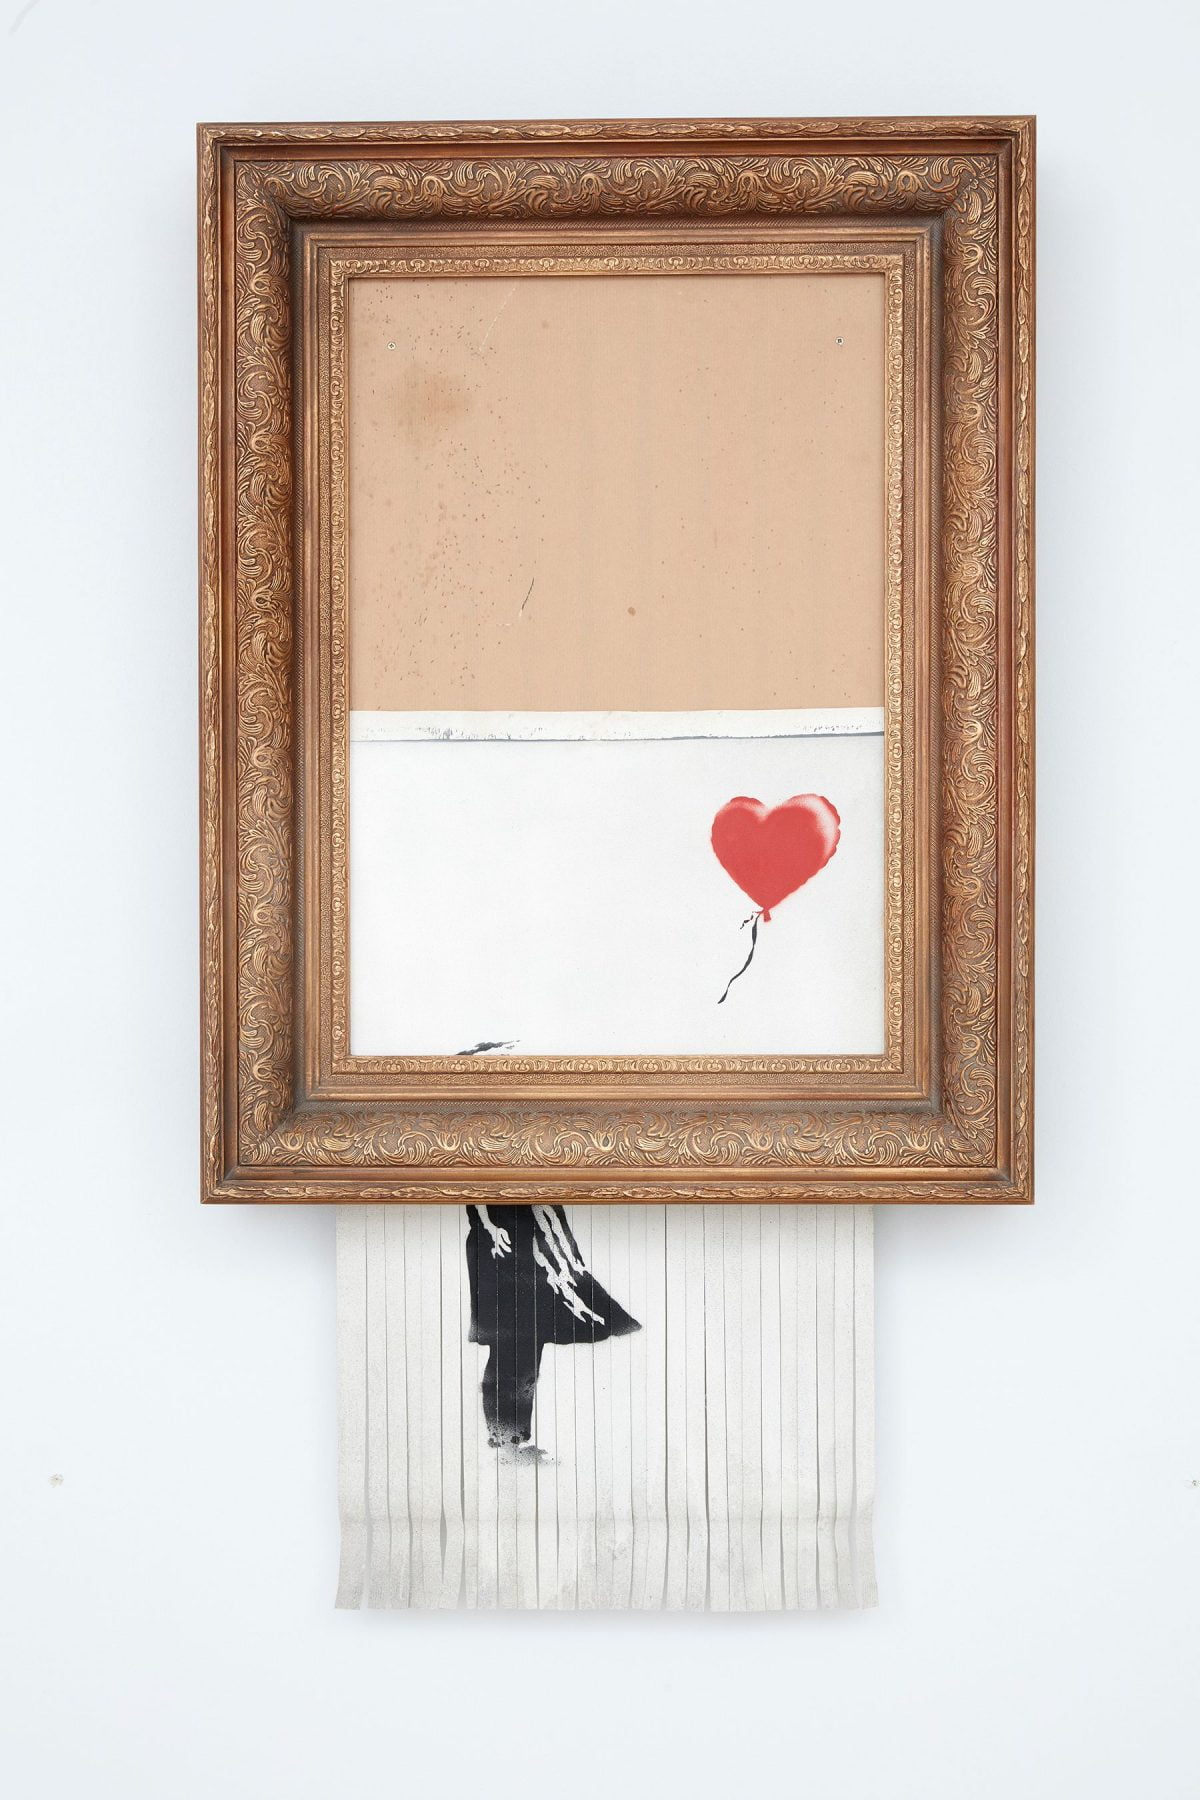 Banksy – Love is in the Bin